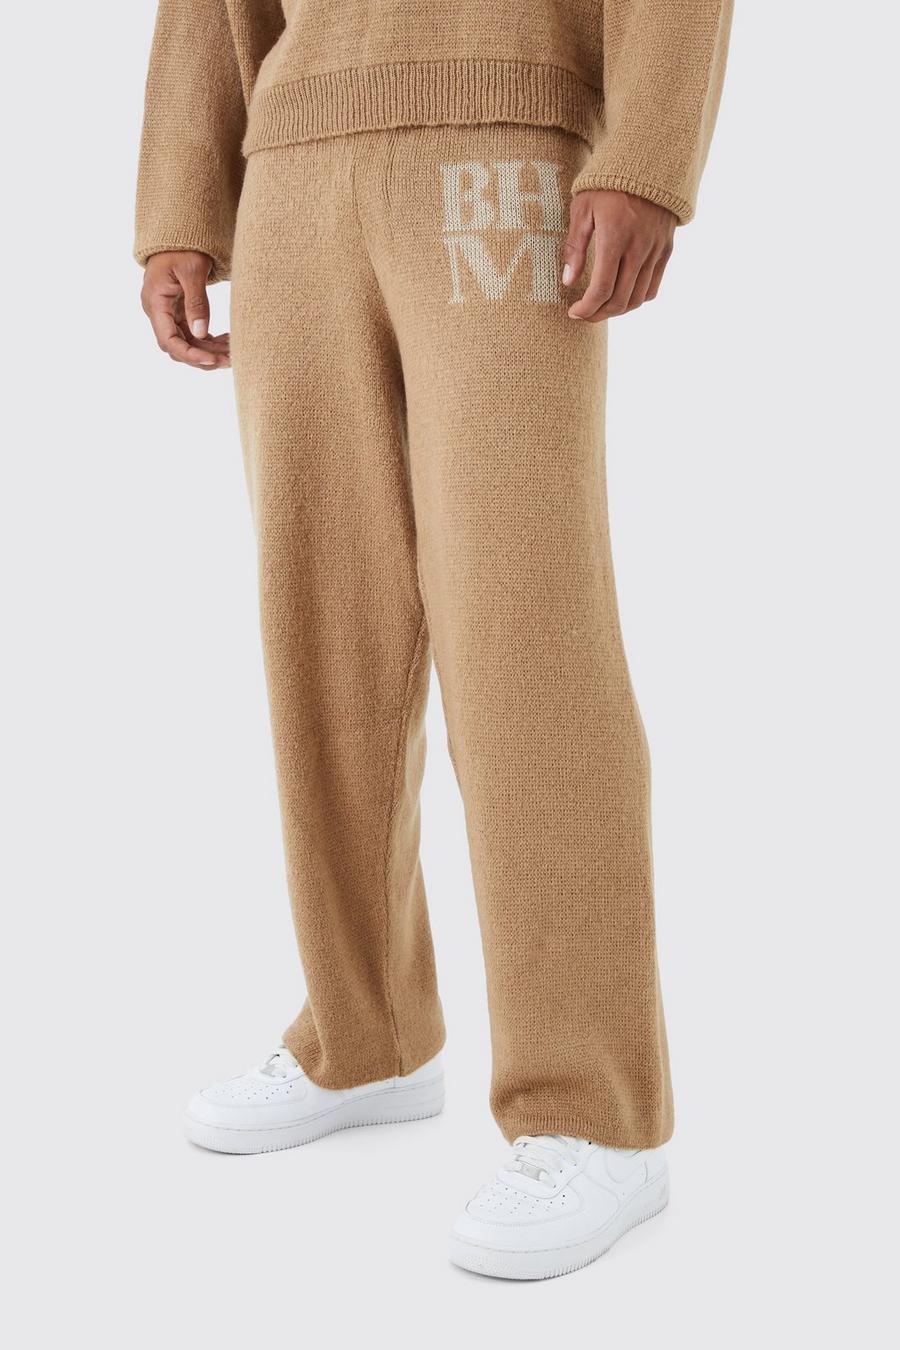 Pantalón chándal de hombre: elegante cashmere